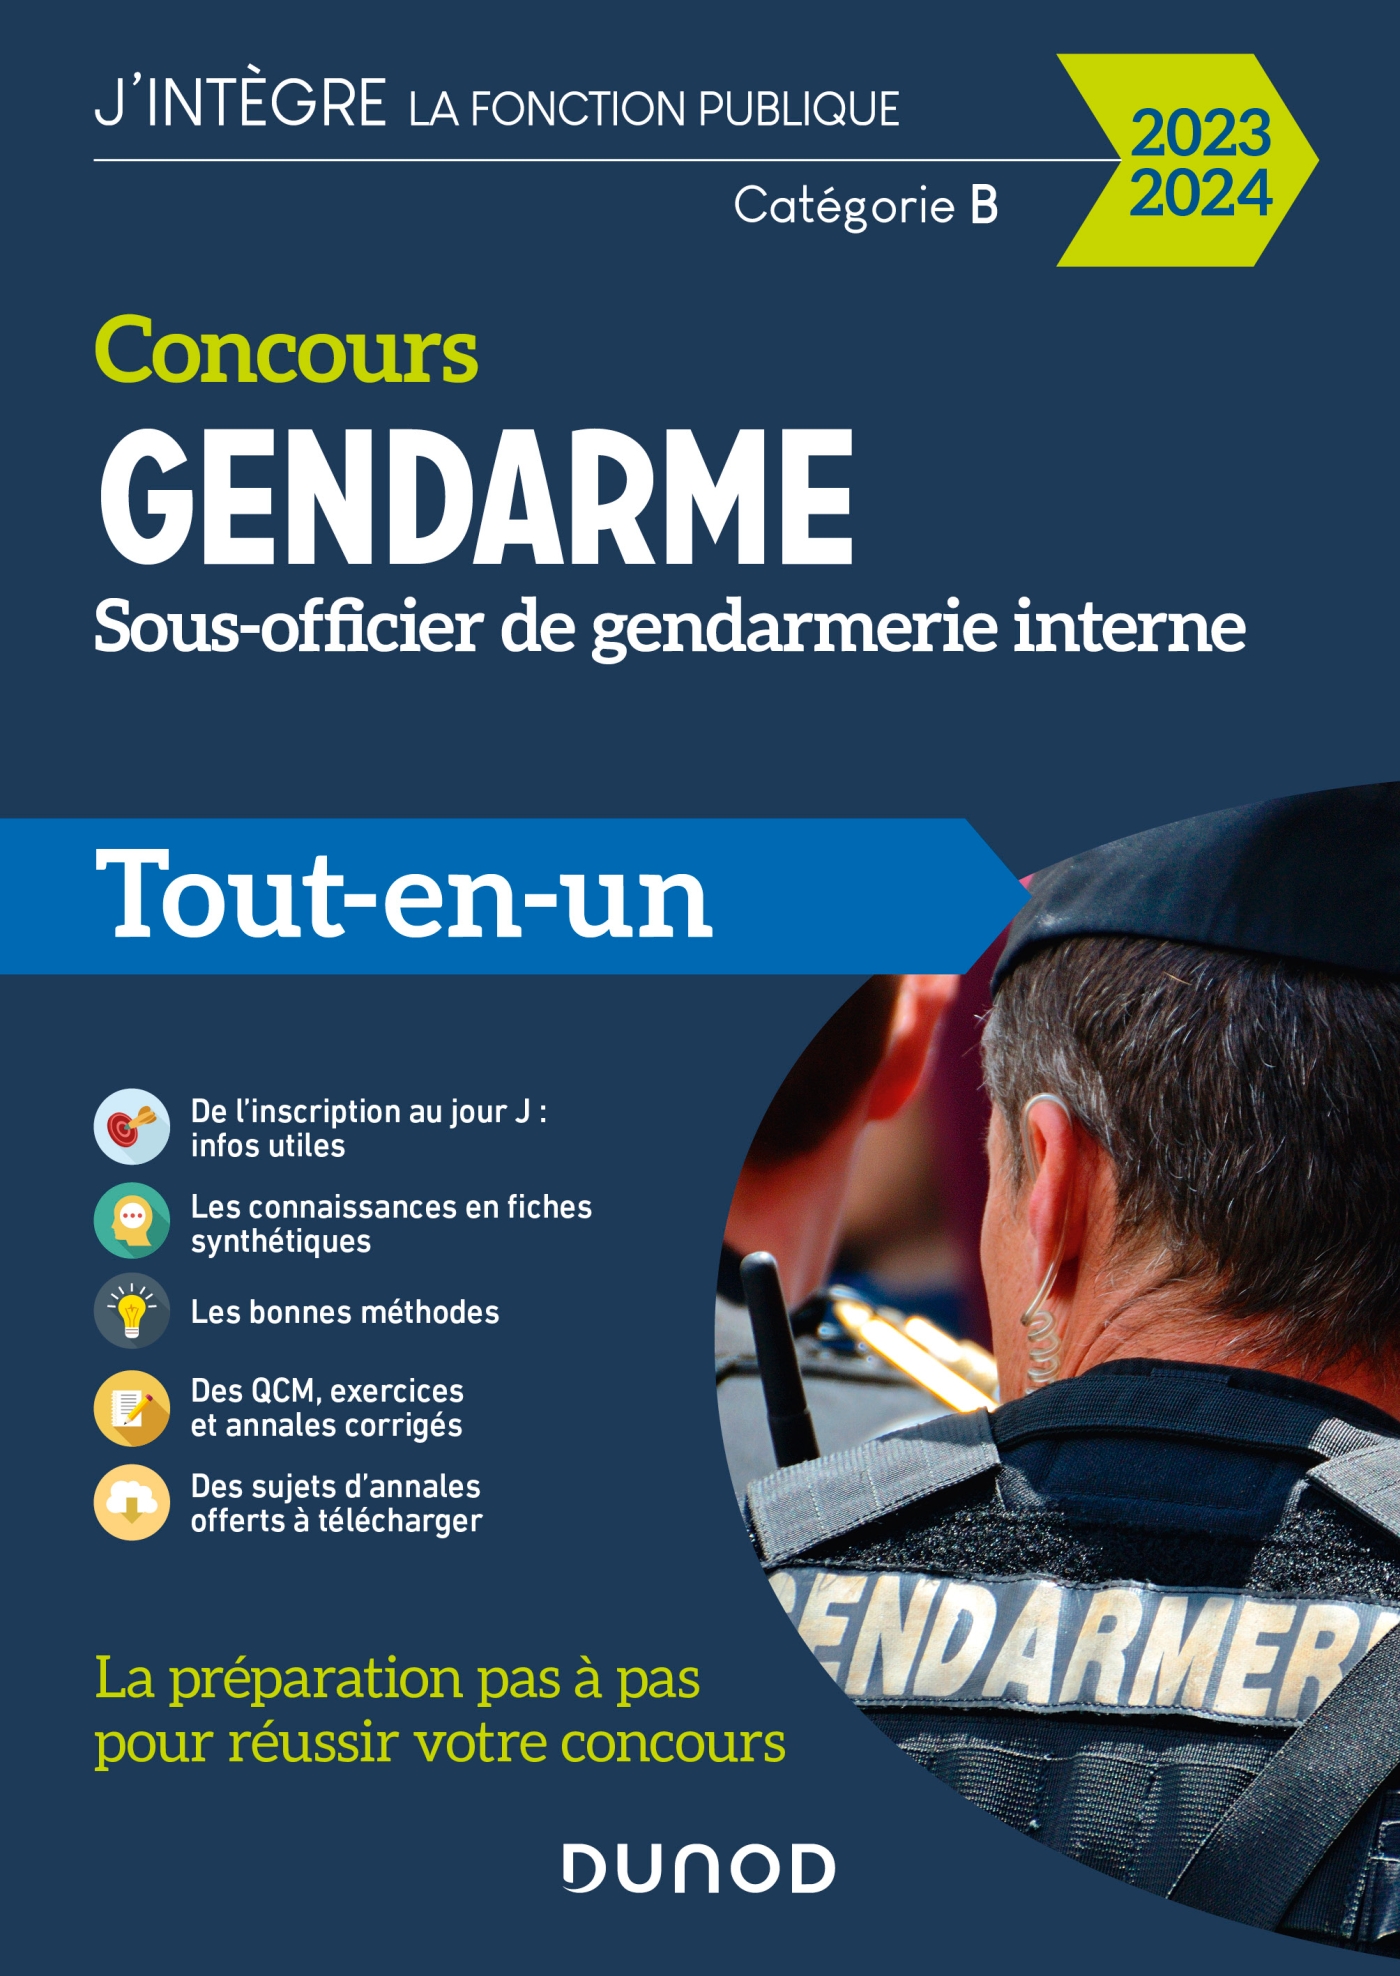 Opération de communication de la Gendarmerie nationale - 14 octobre 2023